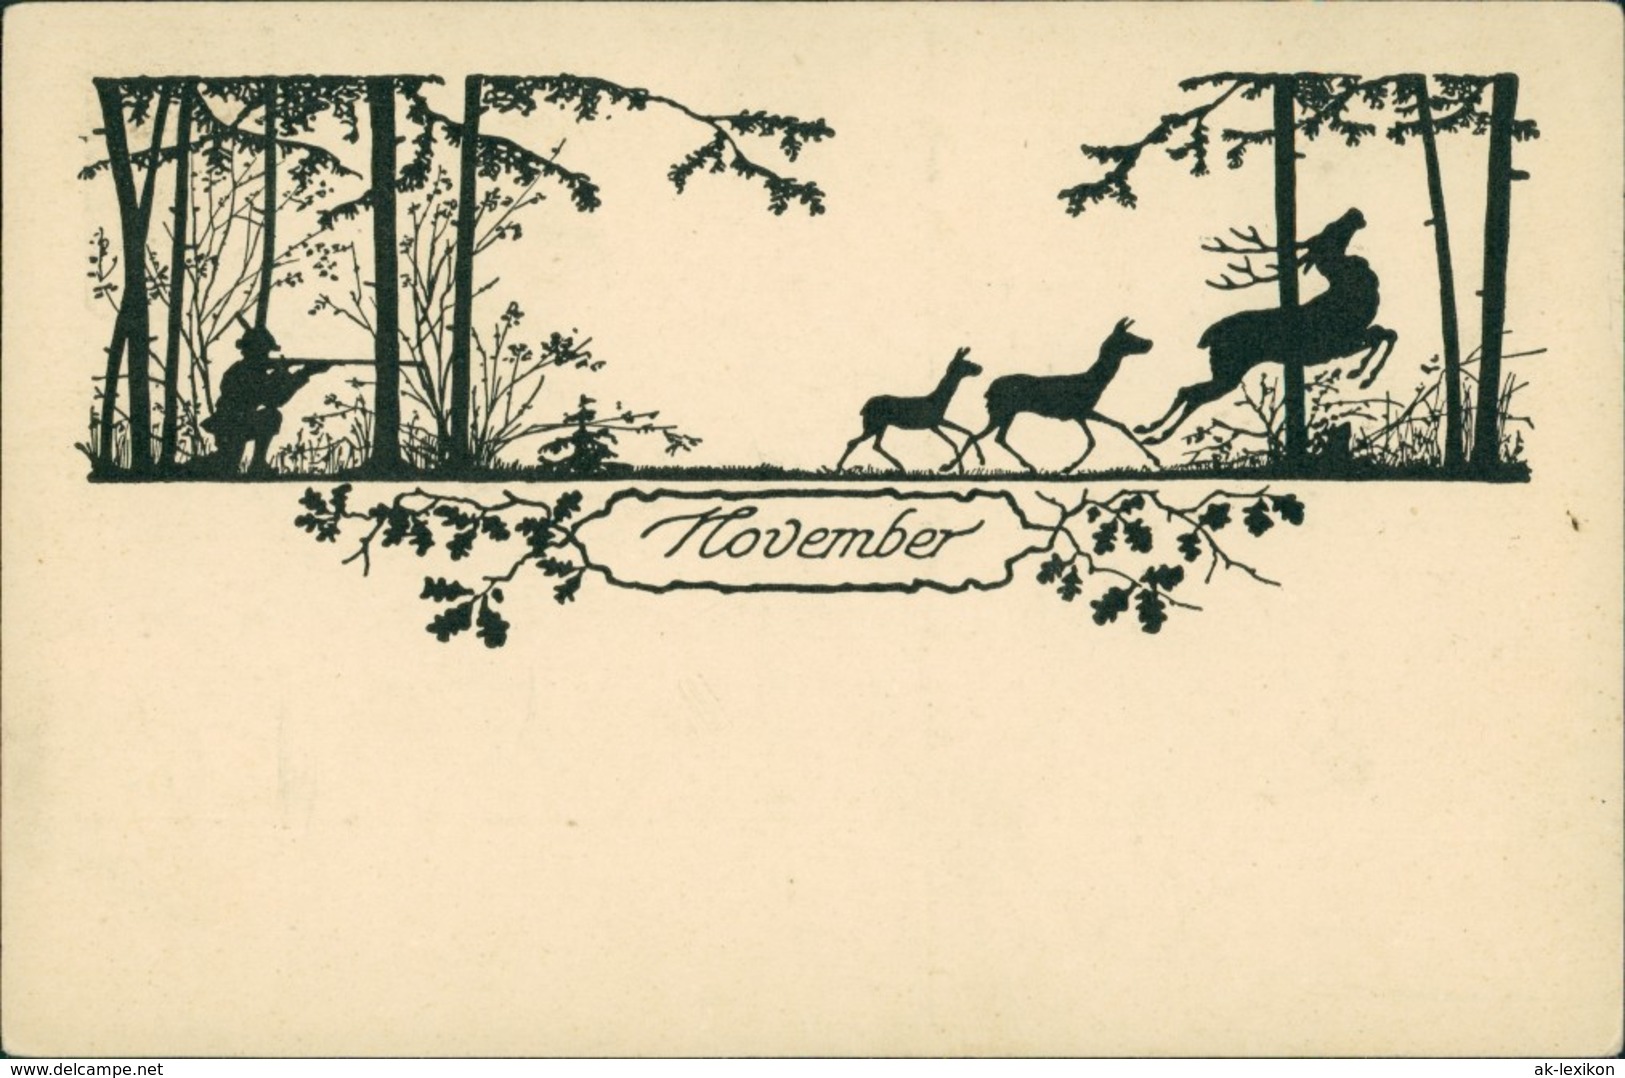  Scherenschnitt/Schattenschnitt-Ansichtskarten Künstlerkarte November 1922 - Scherenschnitt - Silhouette